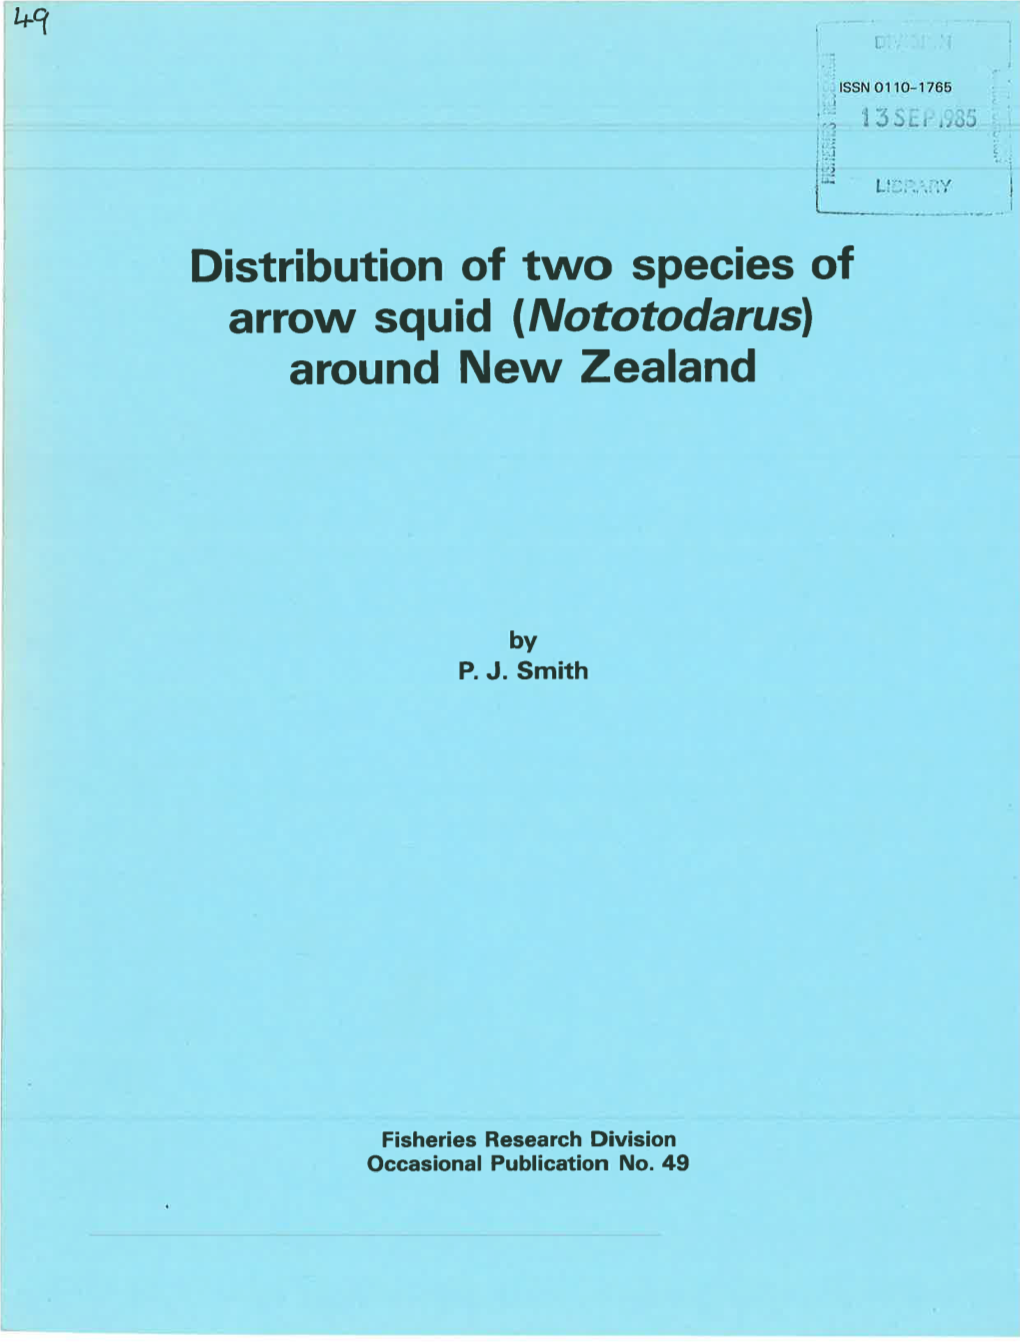 Distribution of Two Species of Arrow Squid (Nototodarusl Around New Zealand